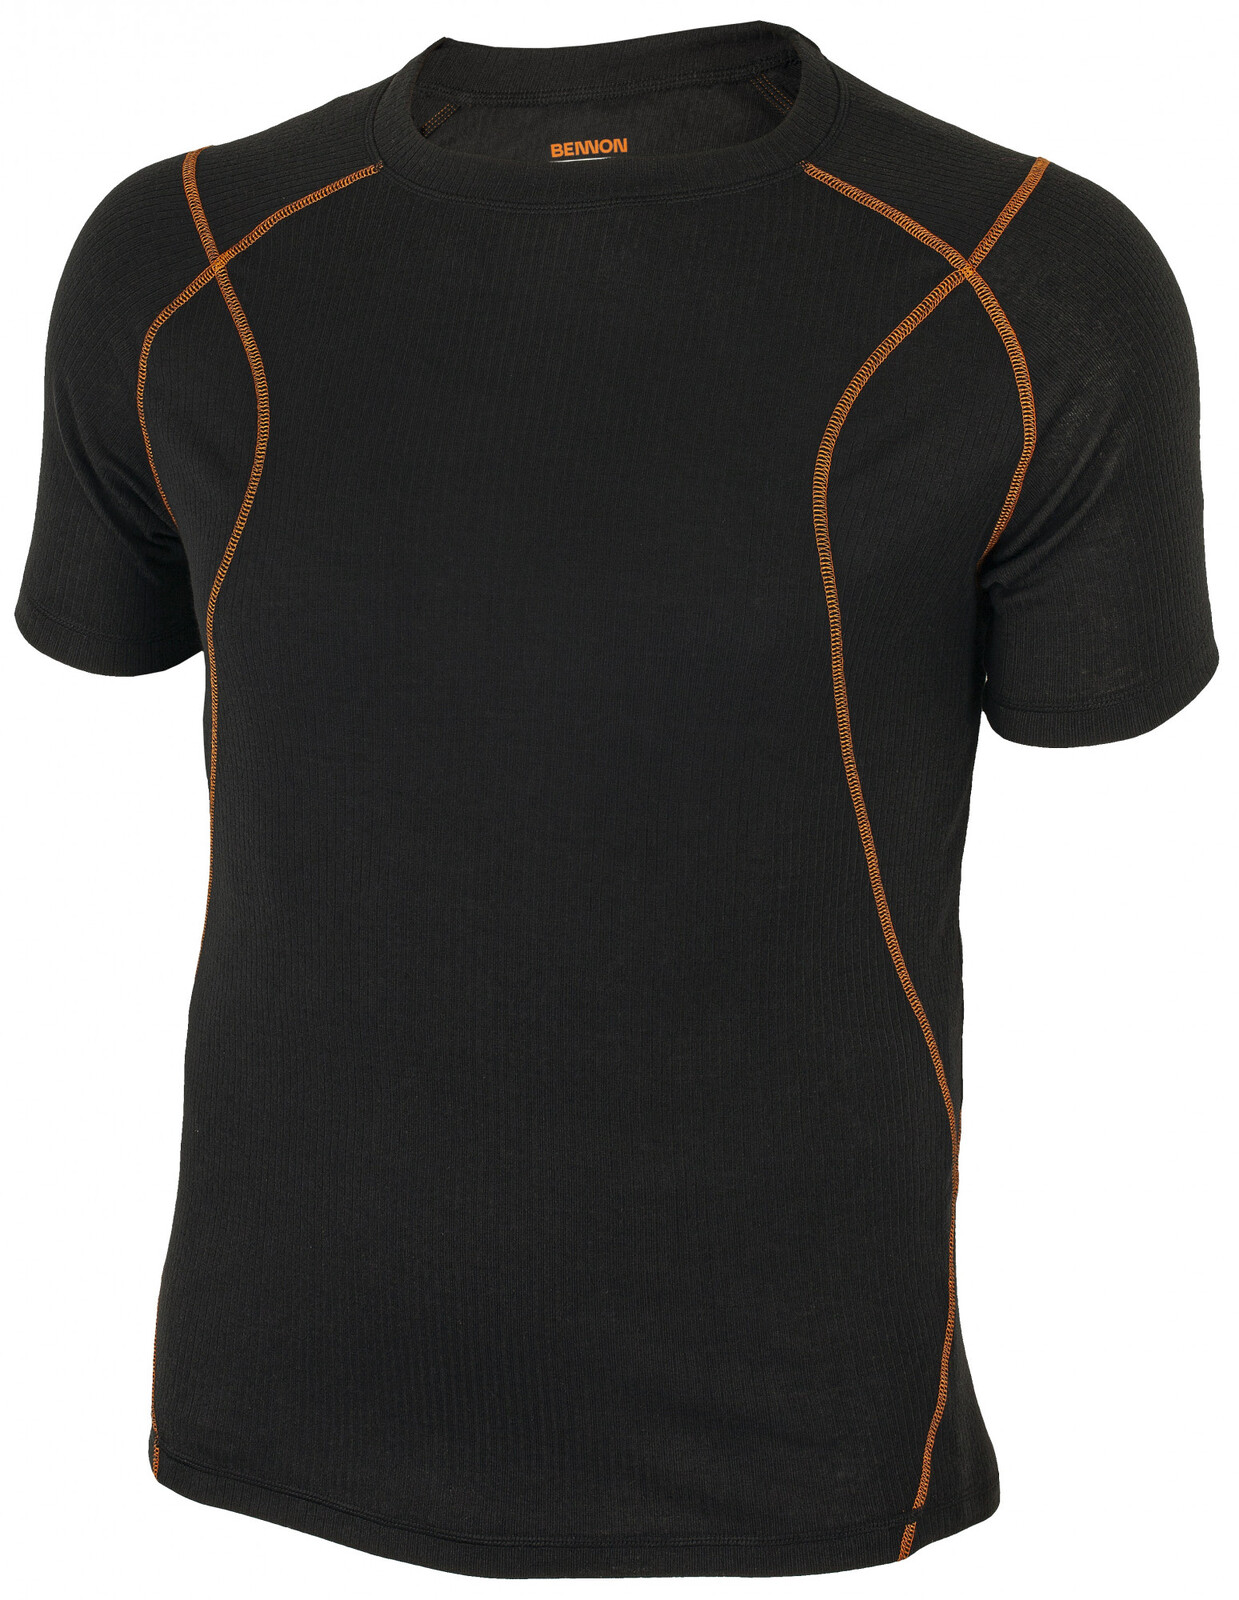 Pánske funkčné termo tričko s krátkym rukávom Bennon Artemios - veľkosť: L, farba: čierna/oranžová